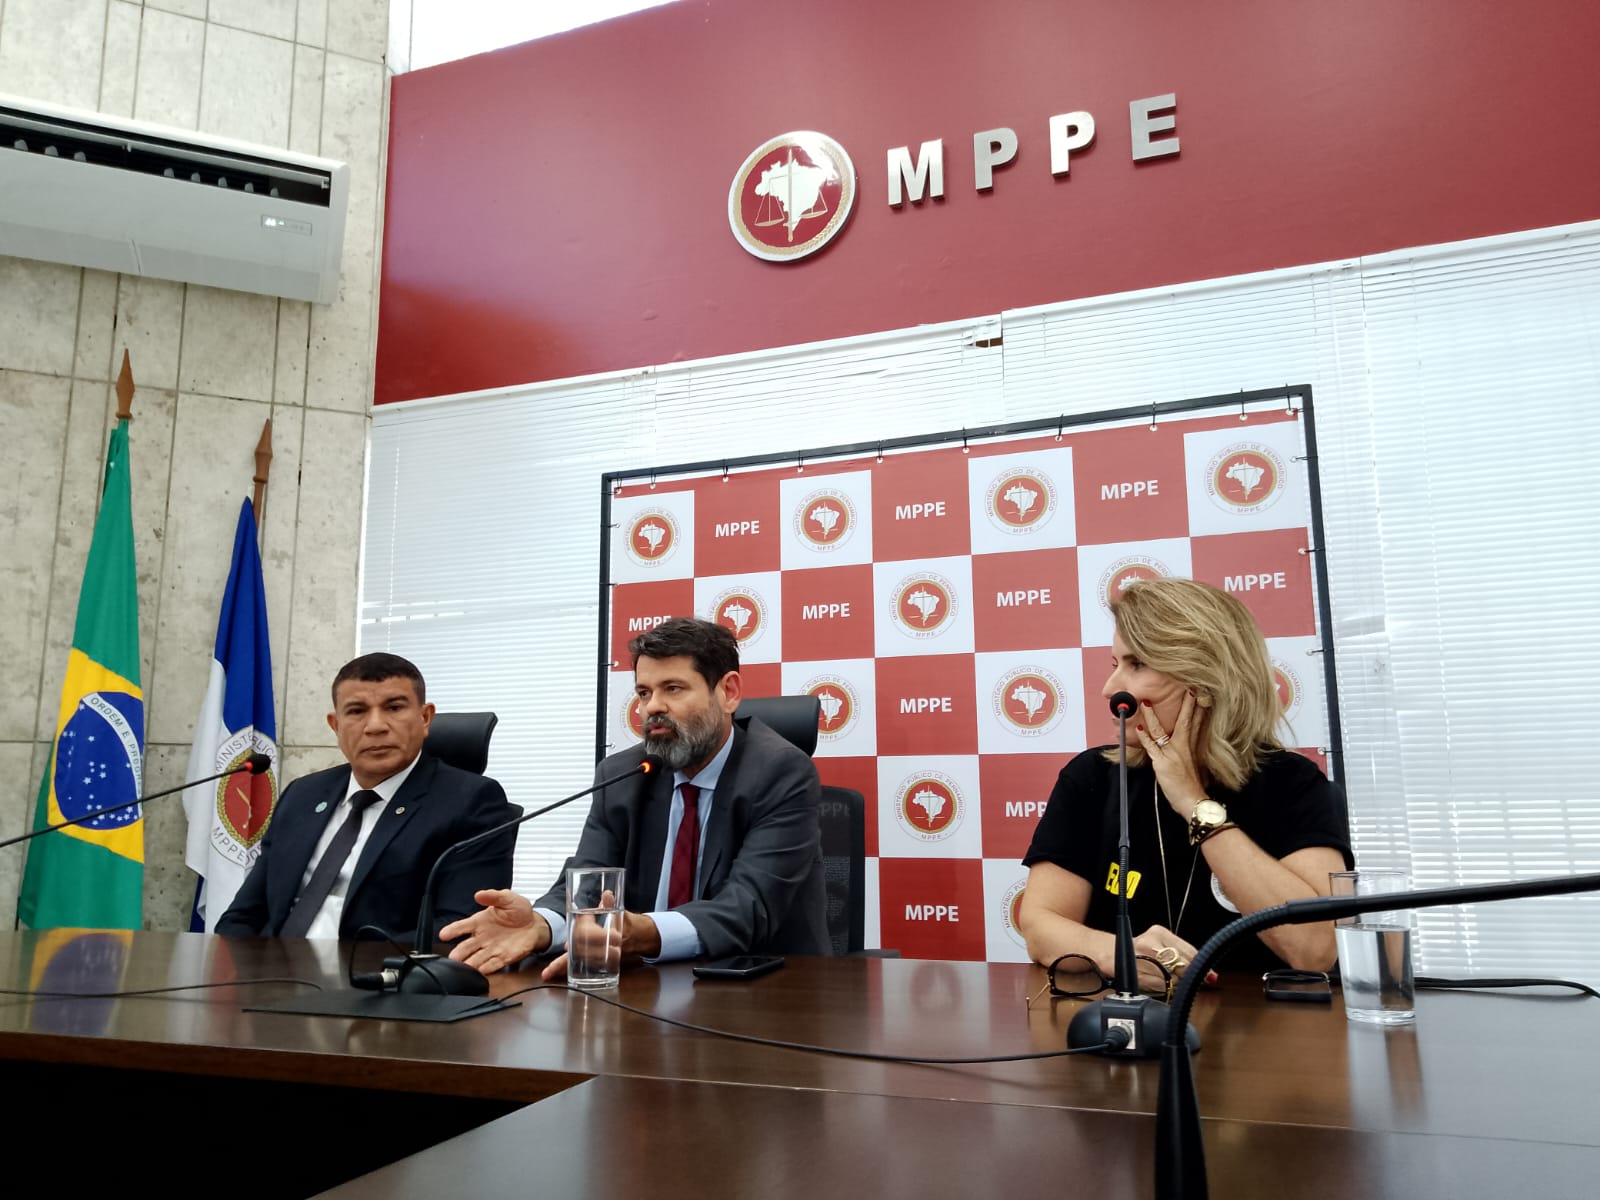 MPPE concedeu entrevista para explicar como foi operação (Foto: Wilson Maranhão/DP)